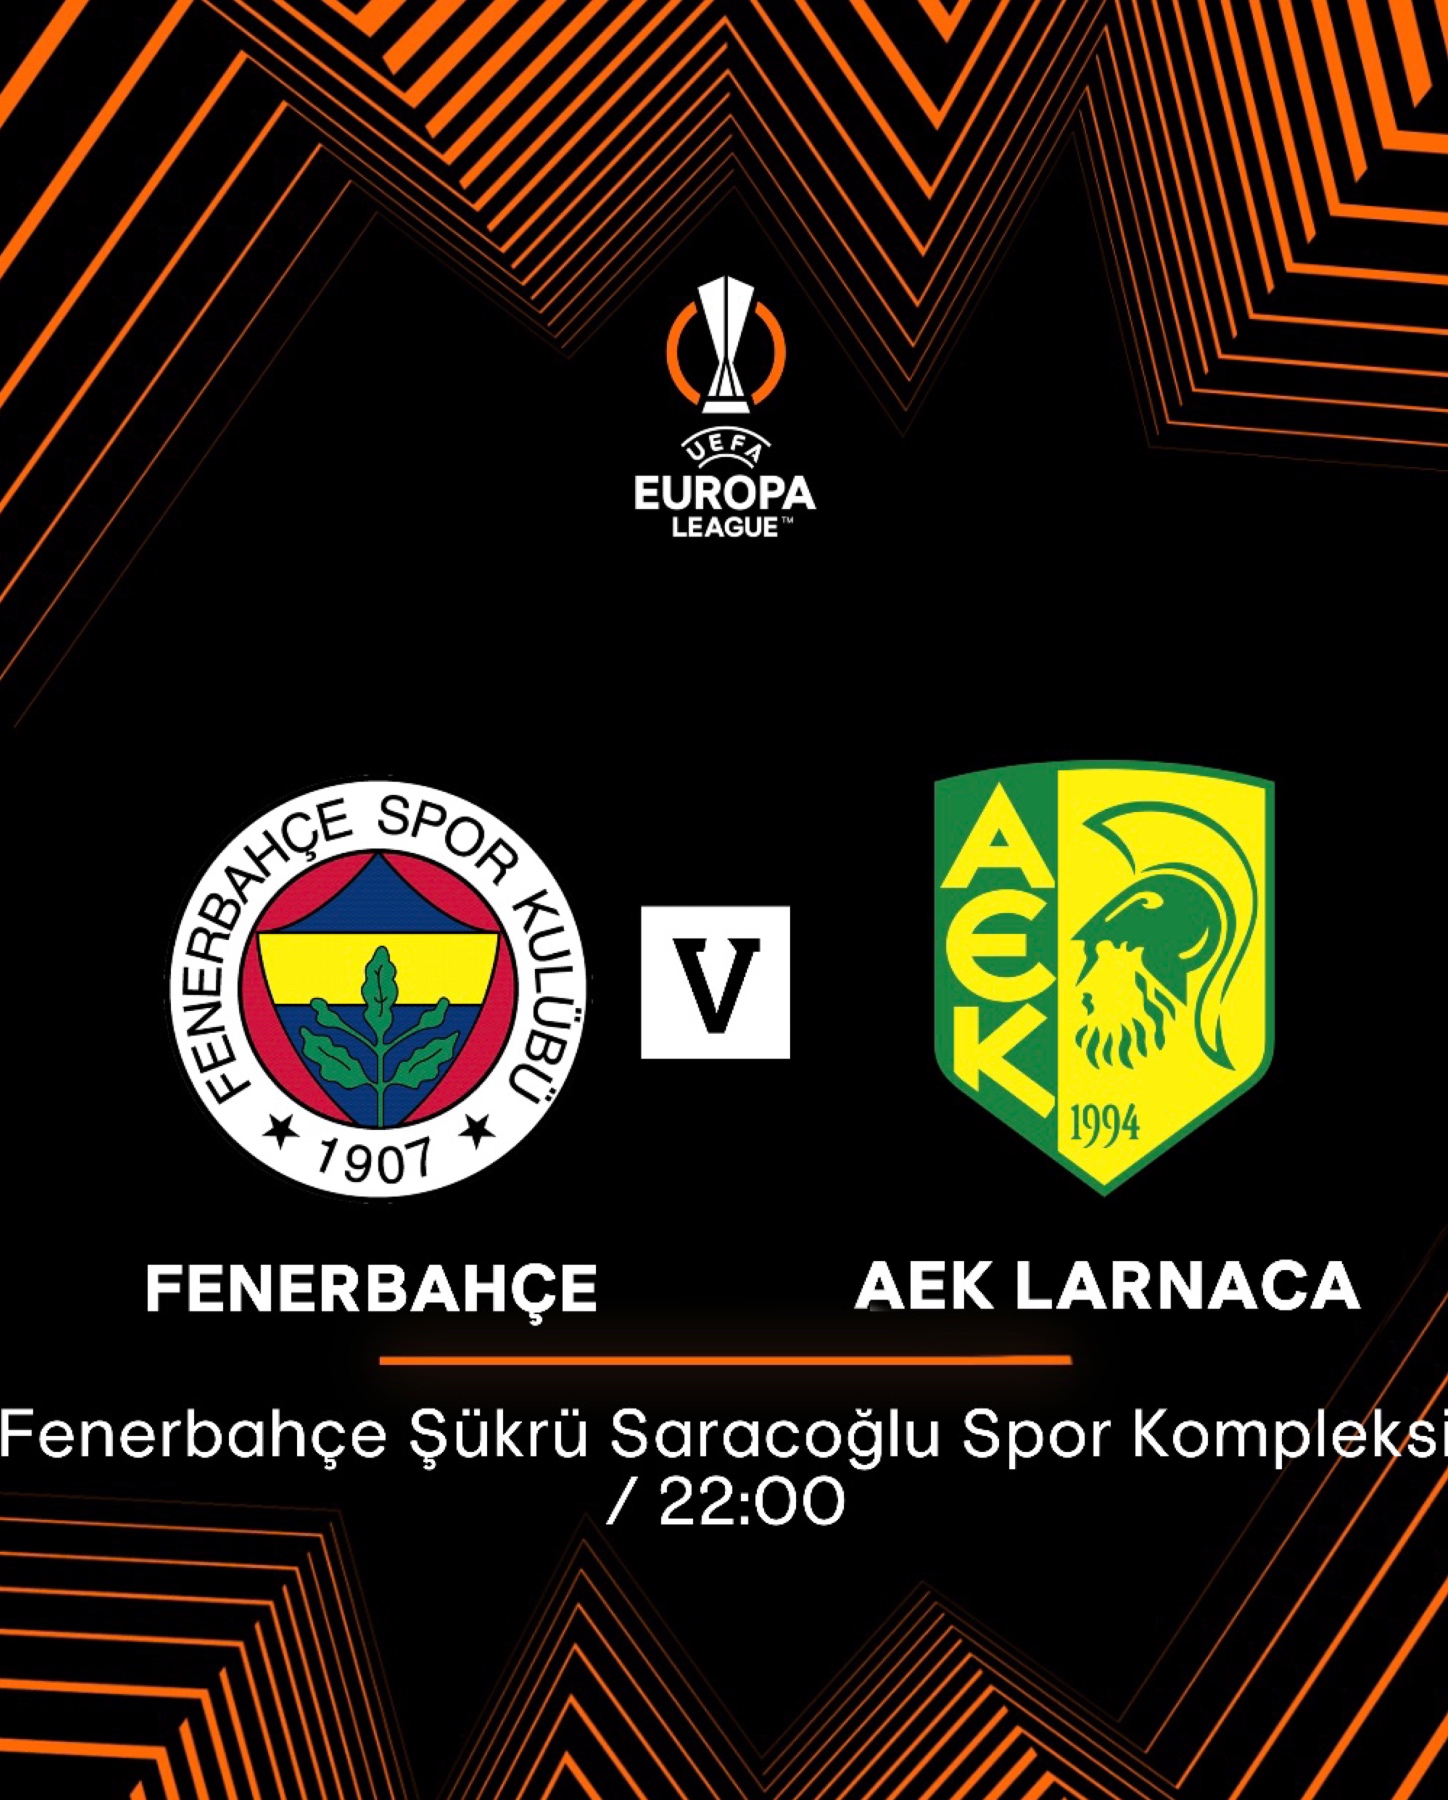 Ανακοίνωση για τα εισιτήρια του αγώνα με την Fenerbahce SK